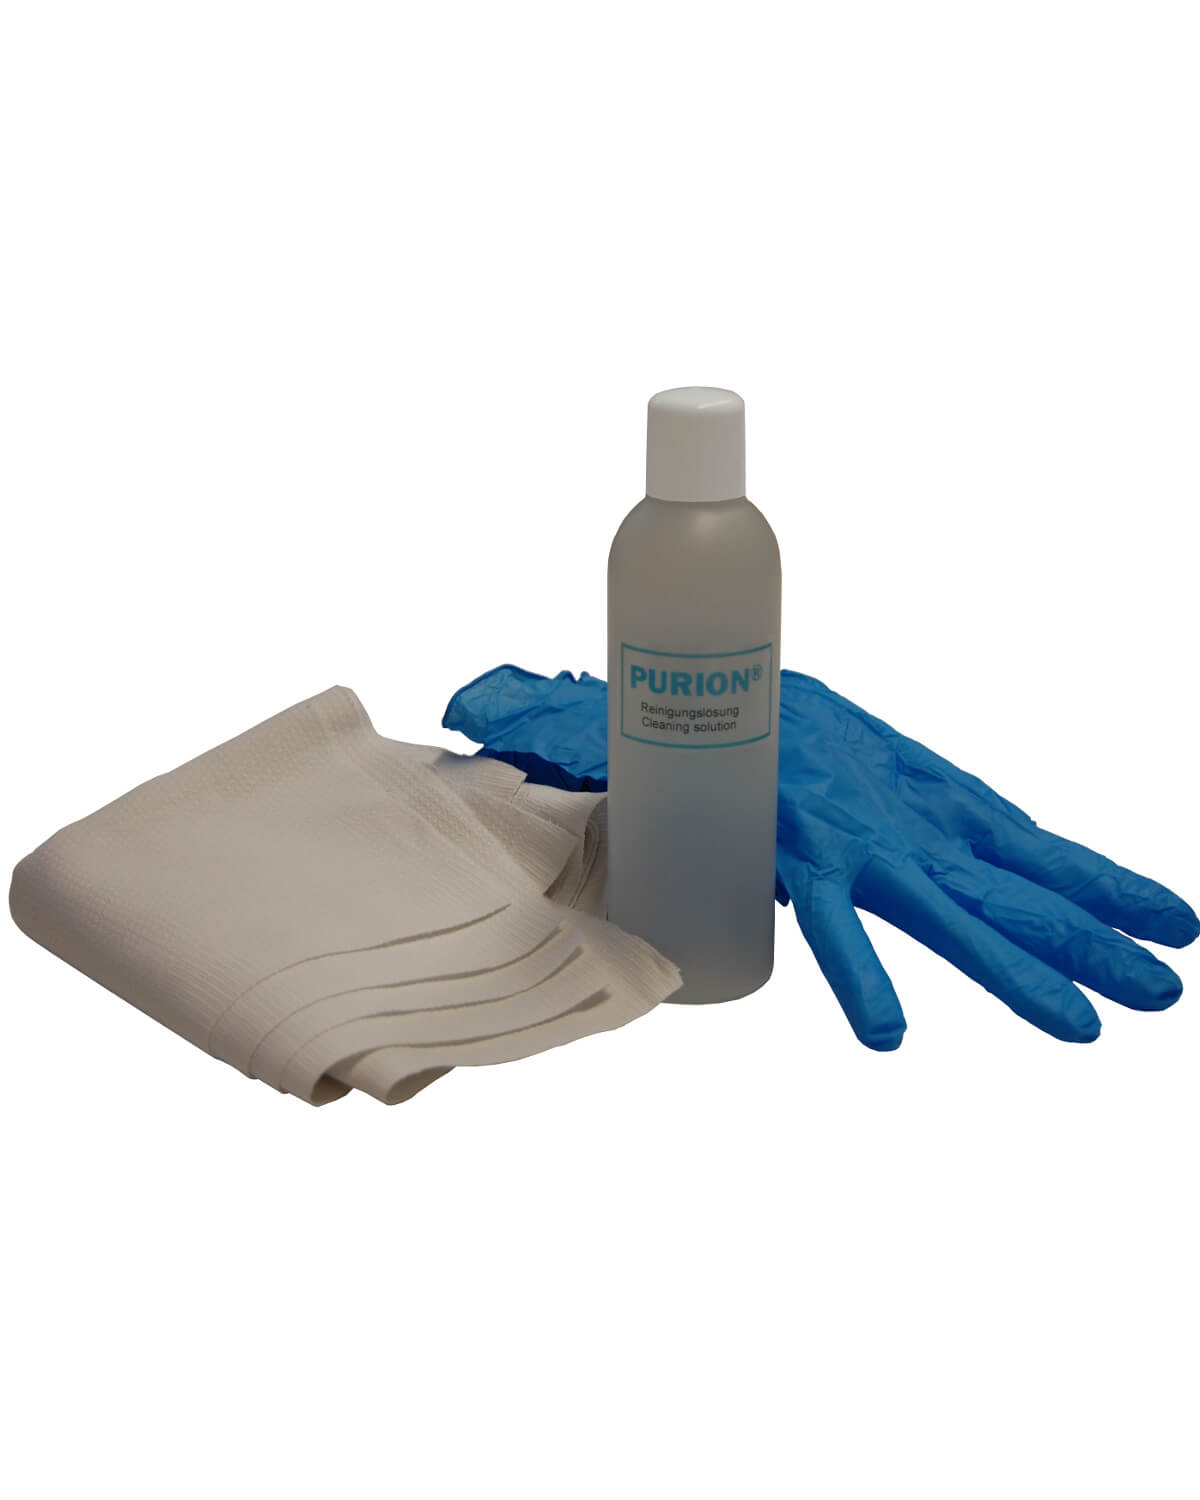 Eine wirksame Reinigungslösung, PURION 2500 H OTC Bundle, kombiniert mit einem Paar blauen Handschuhen für optimalen Schutz bei der UV-C-Desinfektion gegen Legionellen.